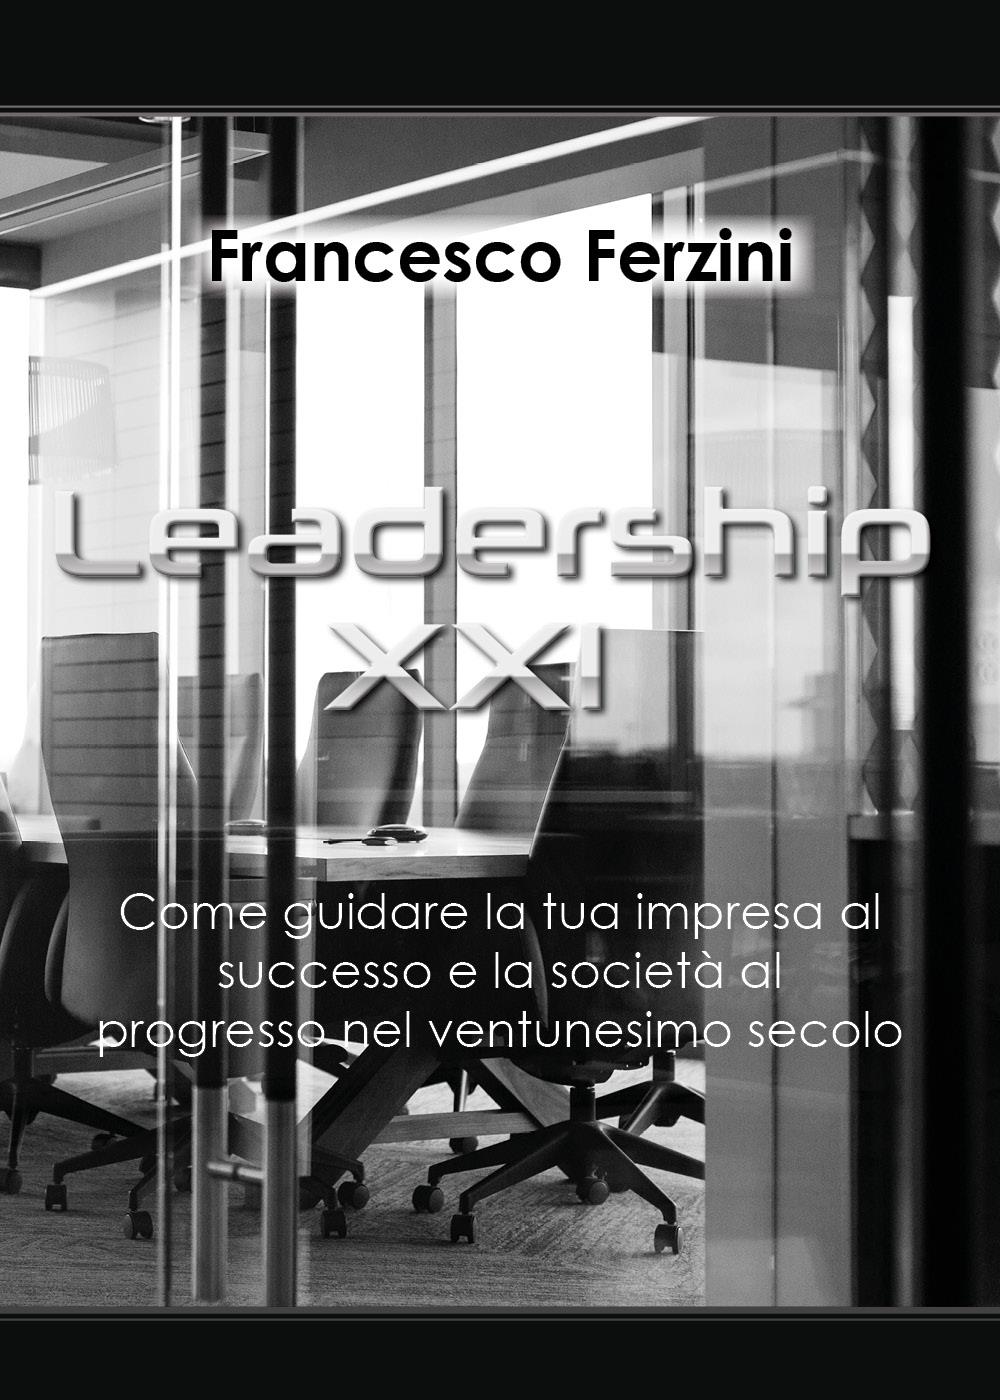 Leadership XXI - Come guidare la tua impresa al successo e la società al progresso nel ventunesimo secolo